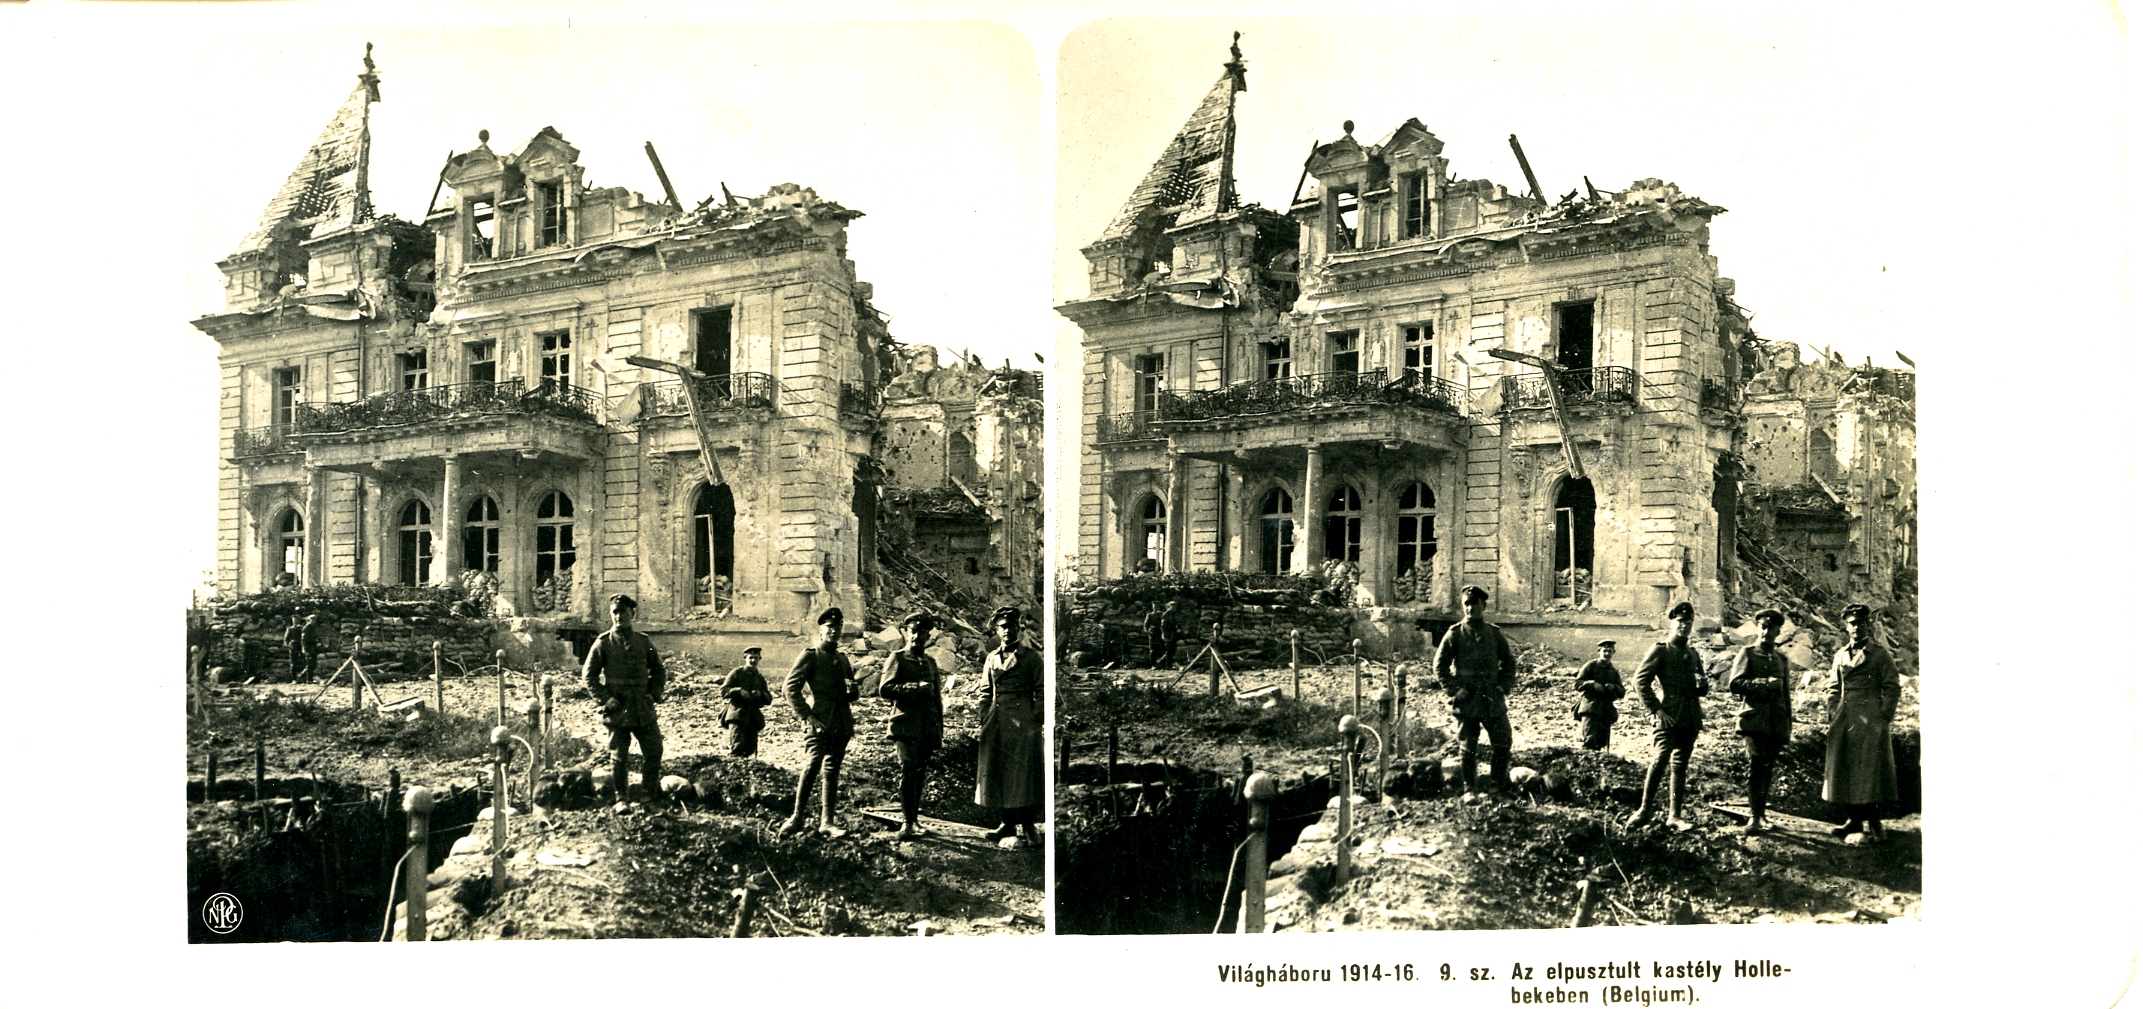 "Az elpusztult kastély Hollebekeben (Belgium)" - The destroyed palace in Hollebeke (Belgium).